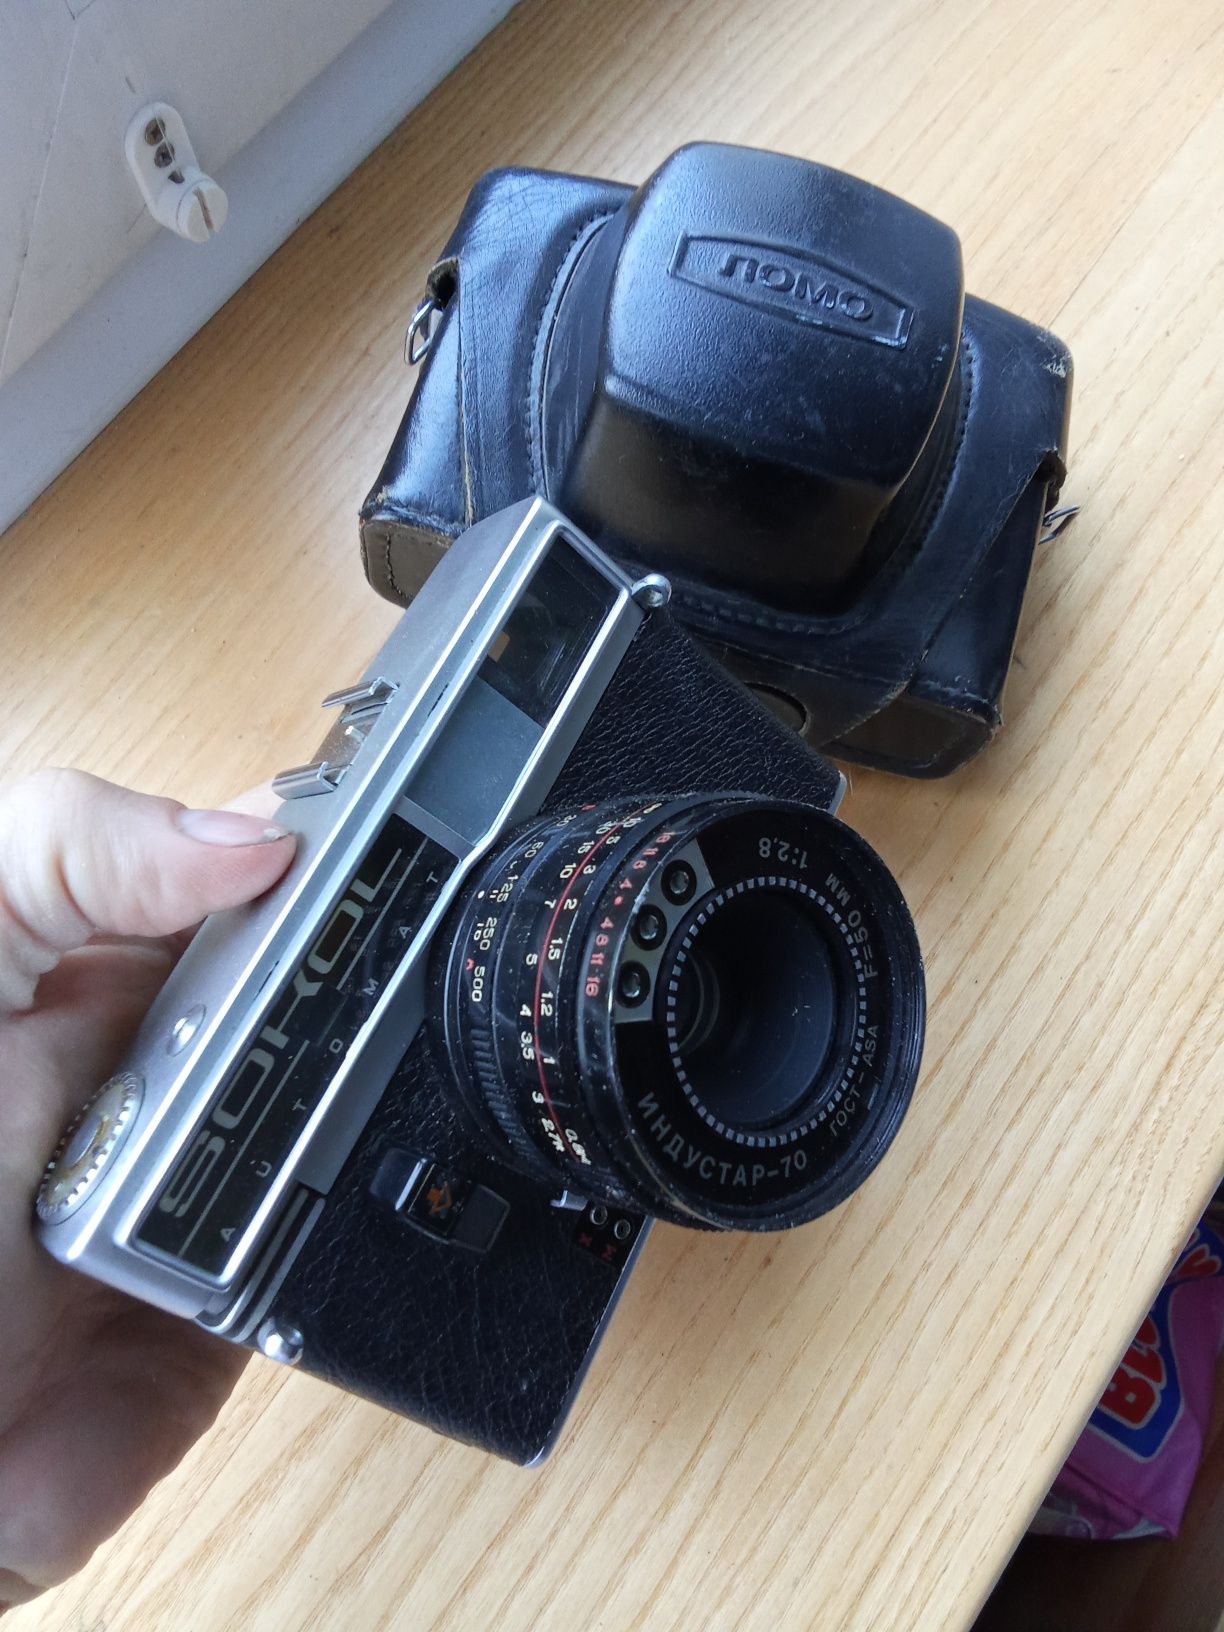 Kamera filmowa  łono sokol Obiektyw undustar 70 ZSRR

Kamera filmowa